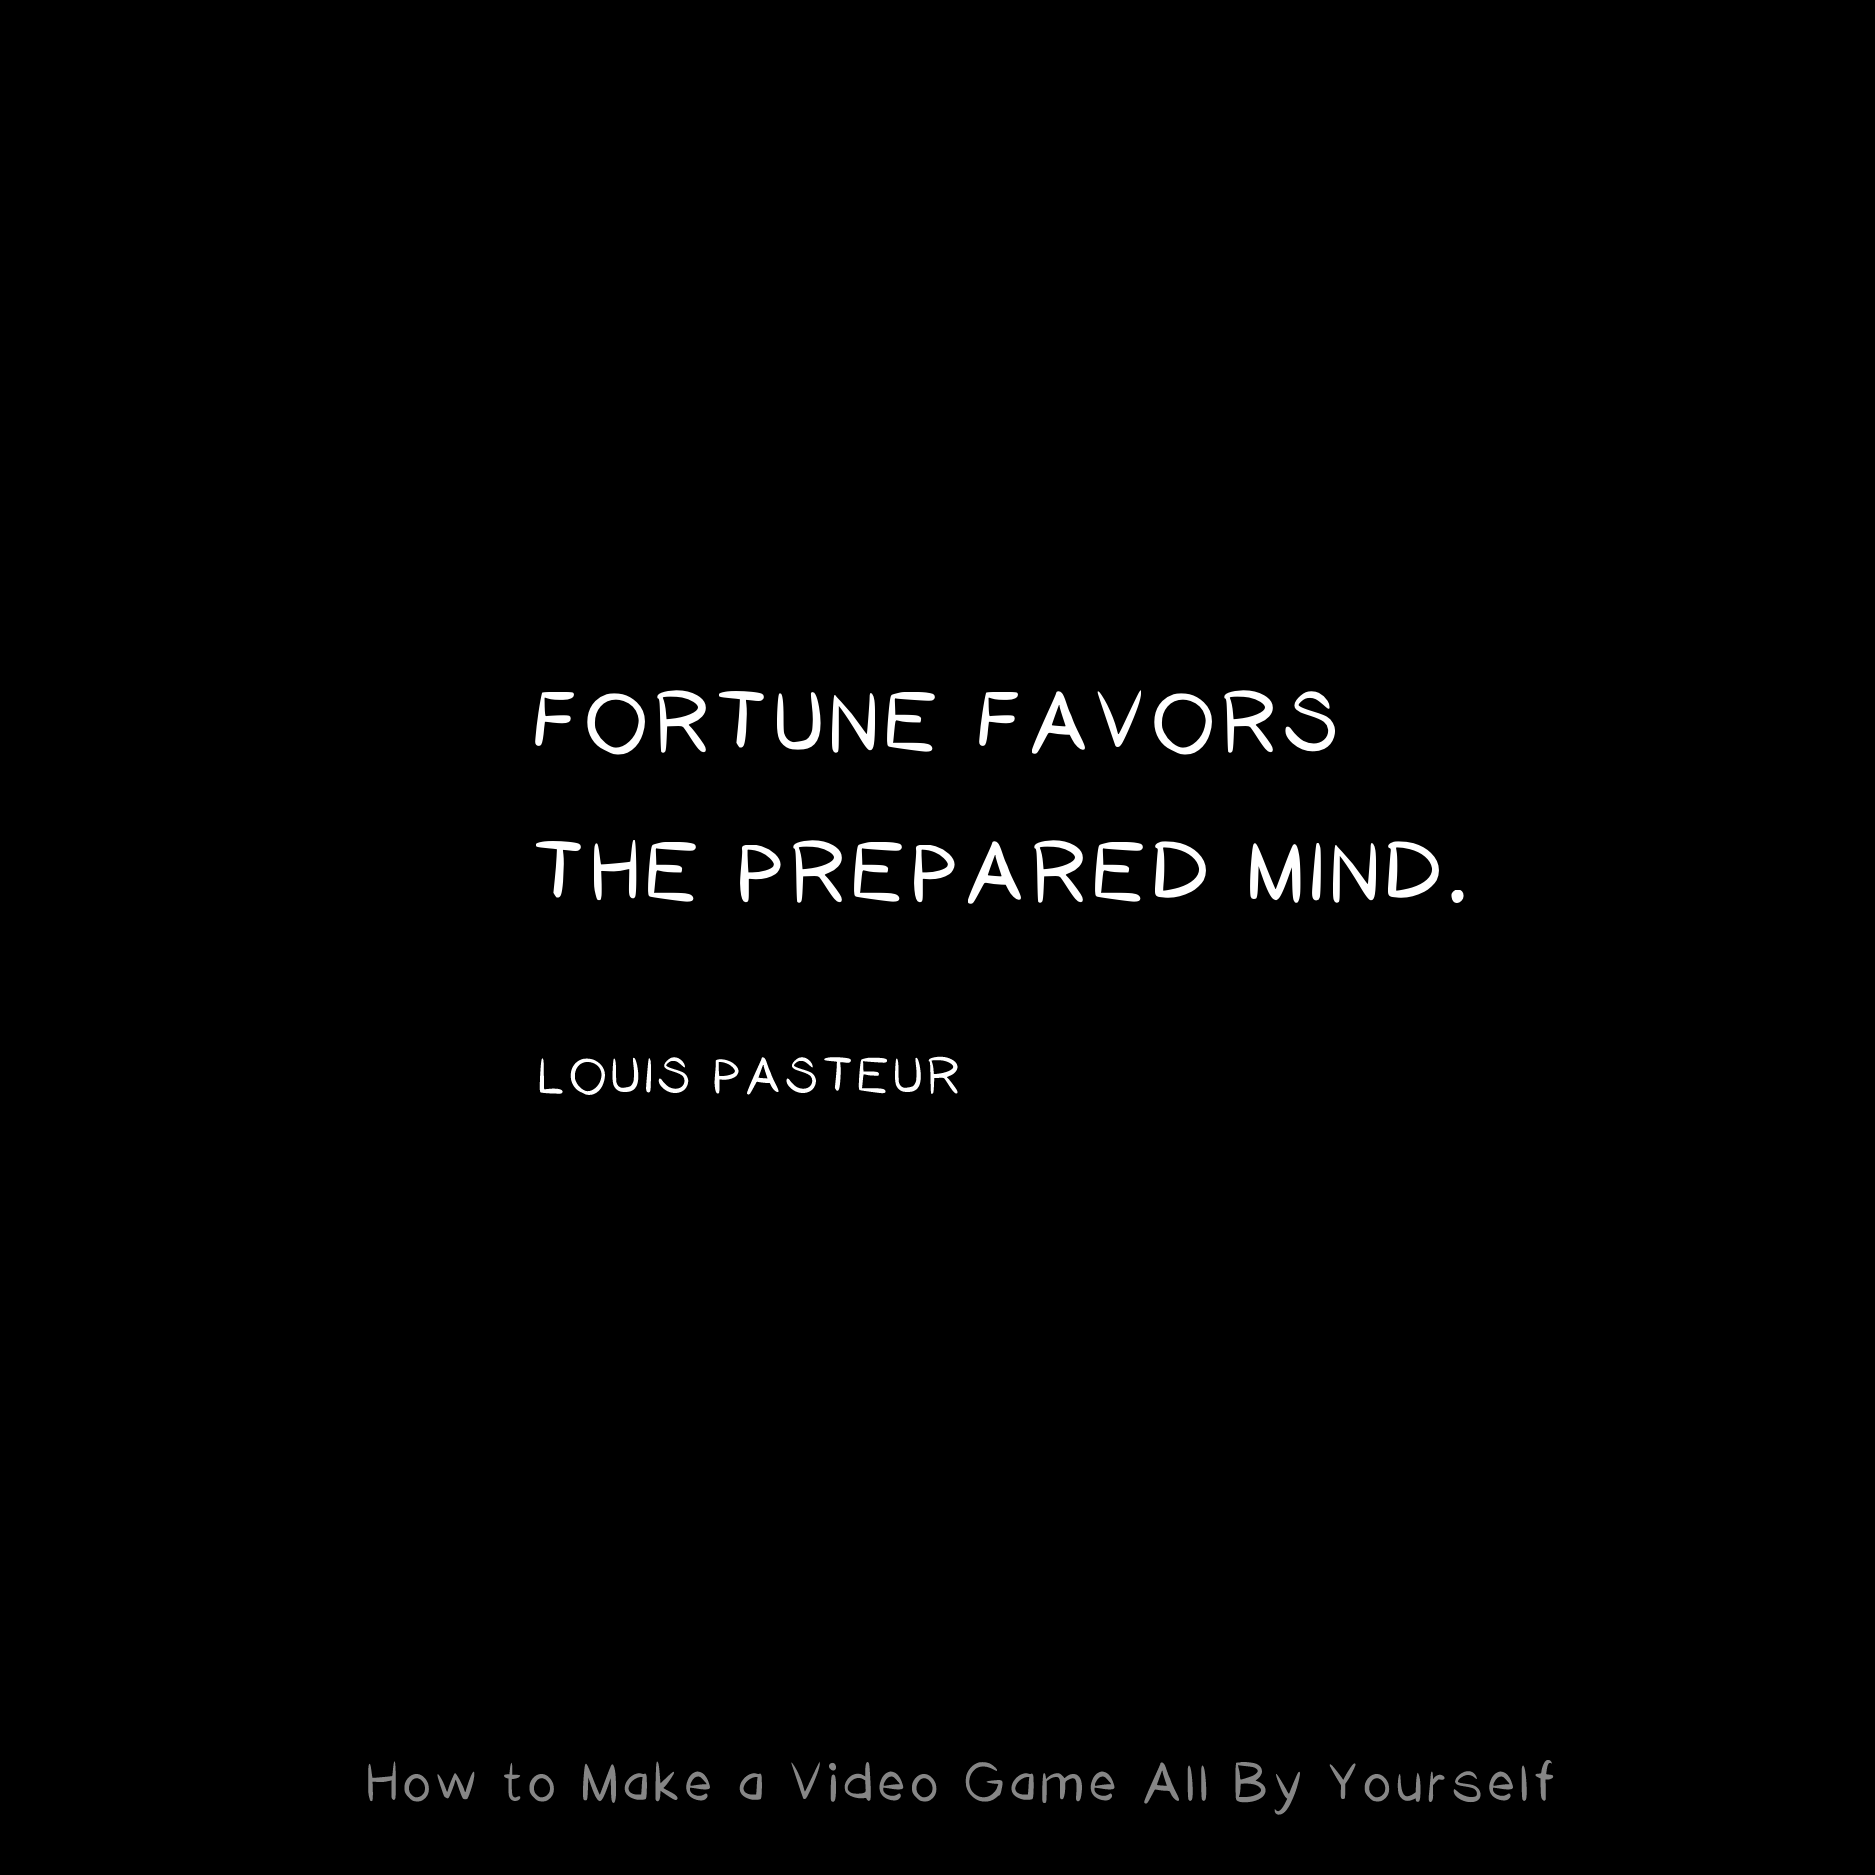 Fortune favors the prepared mind. -Louis Pasteur